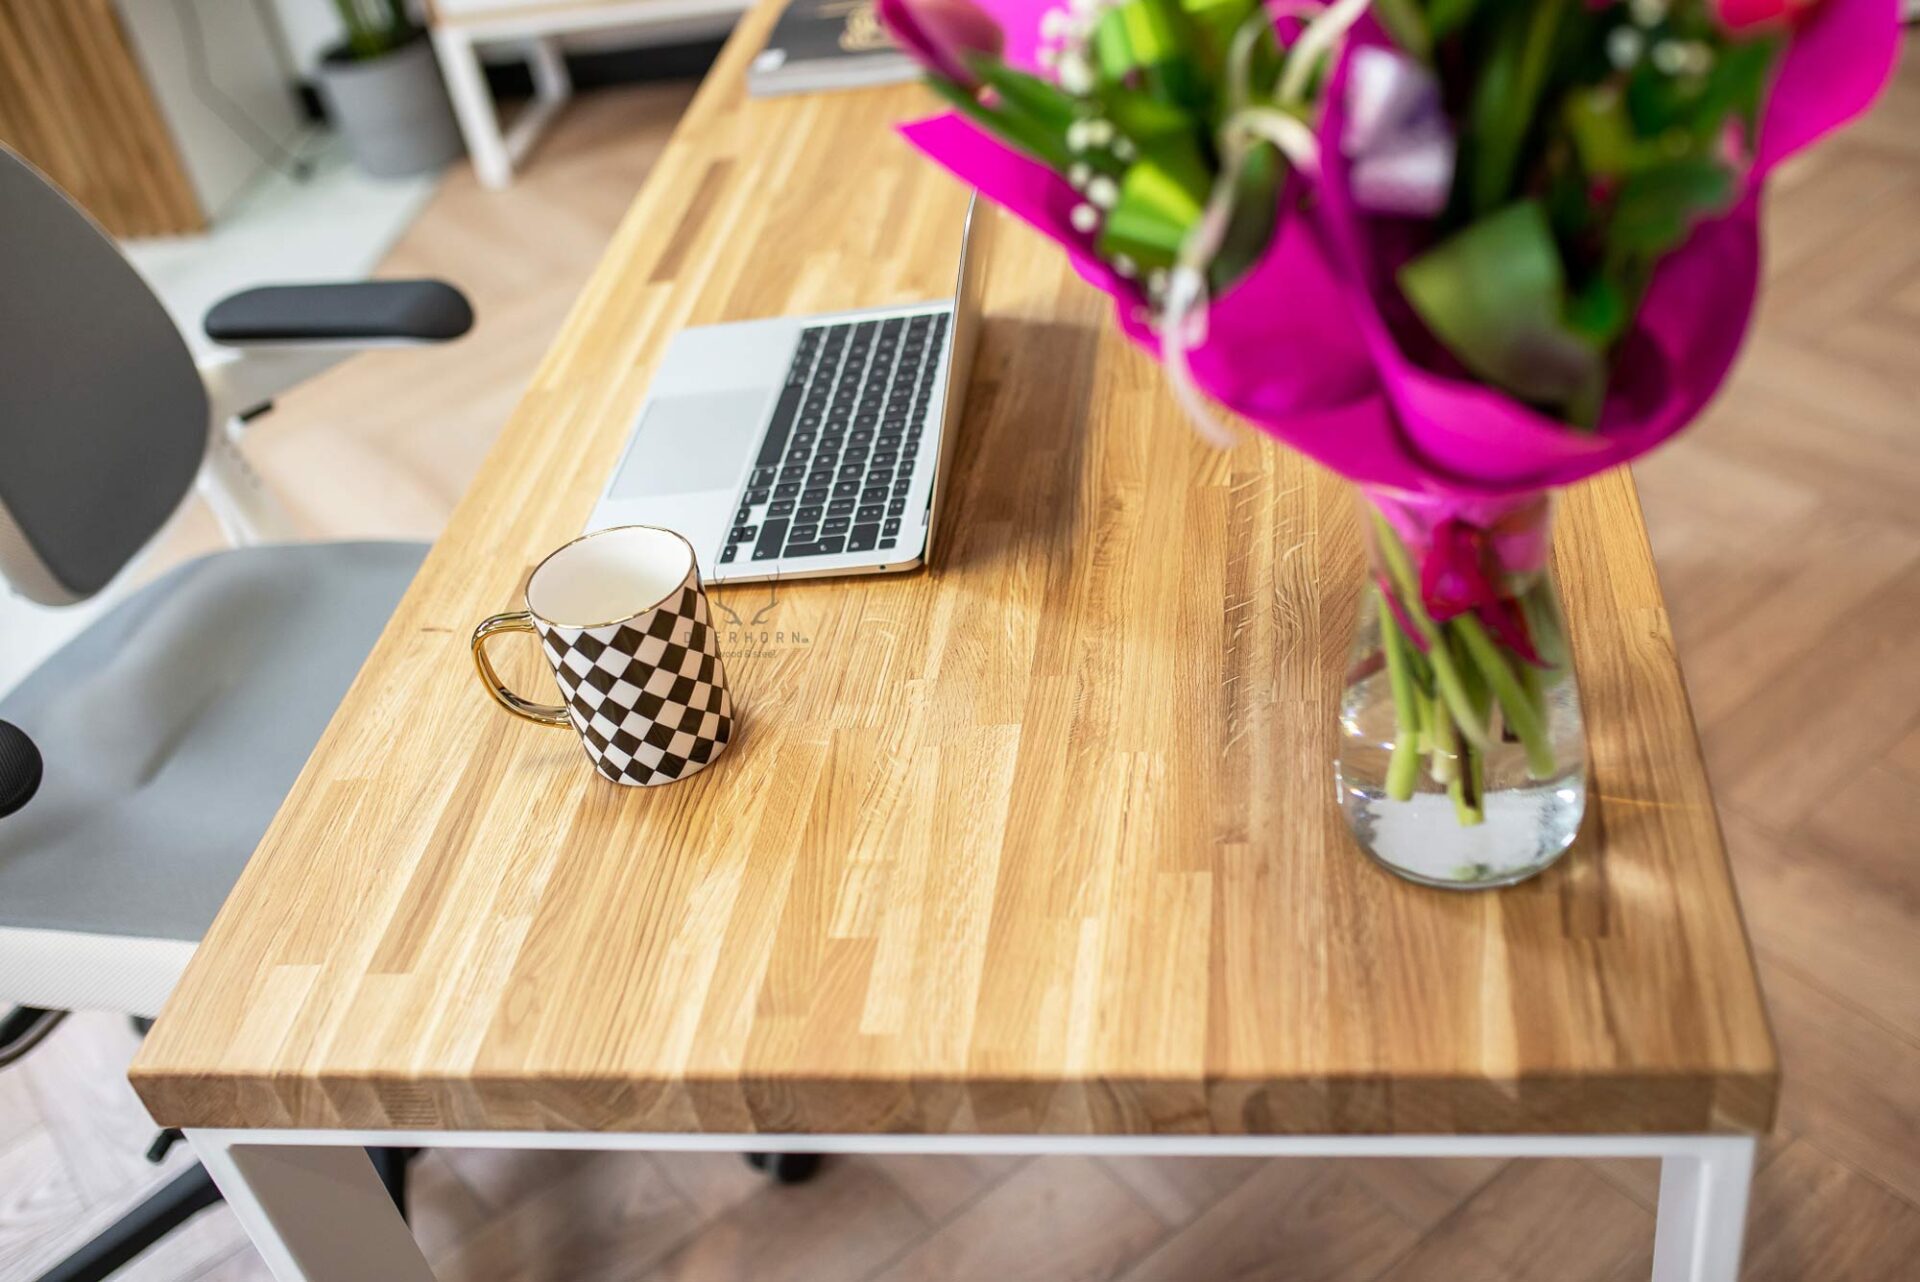 biurko z grubym blatem drewnianym